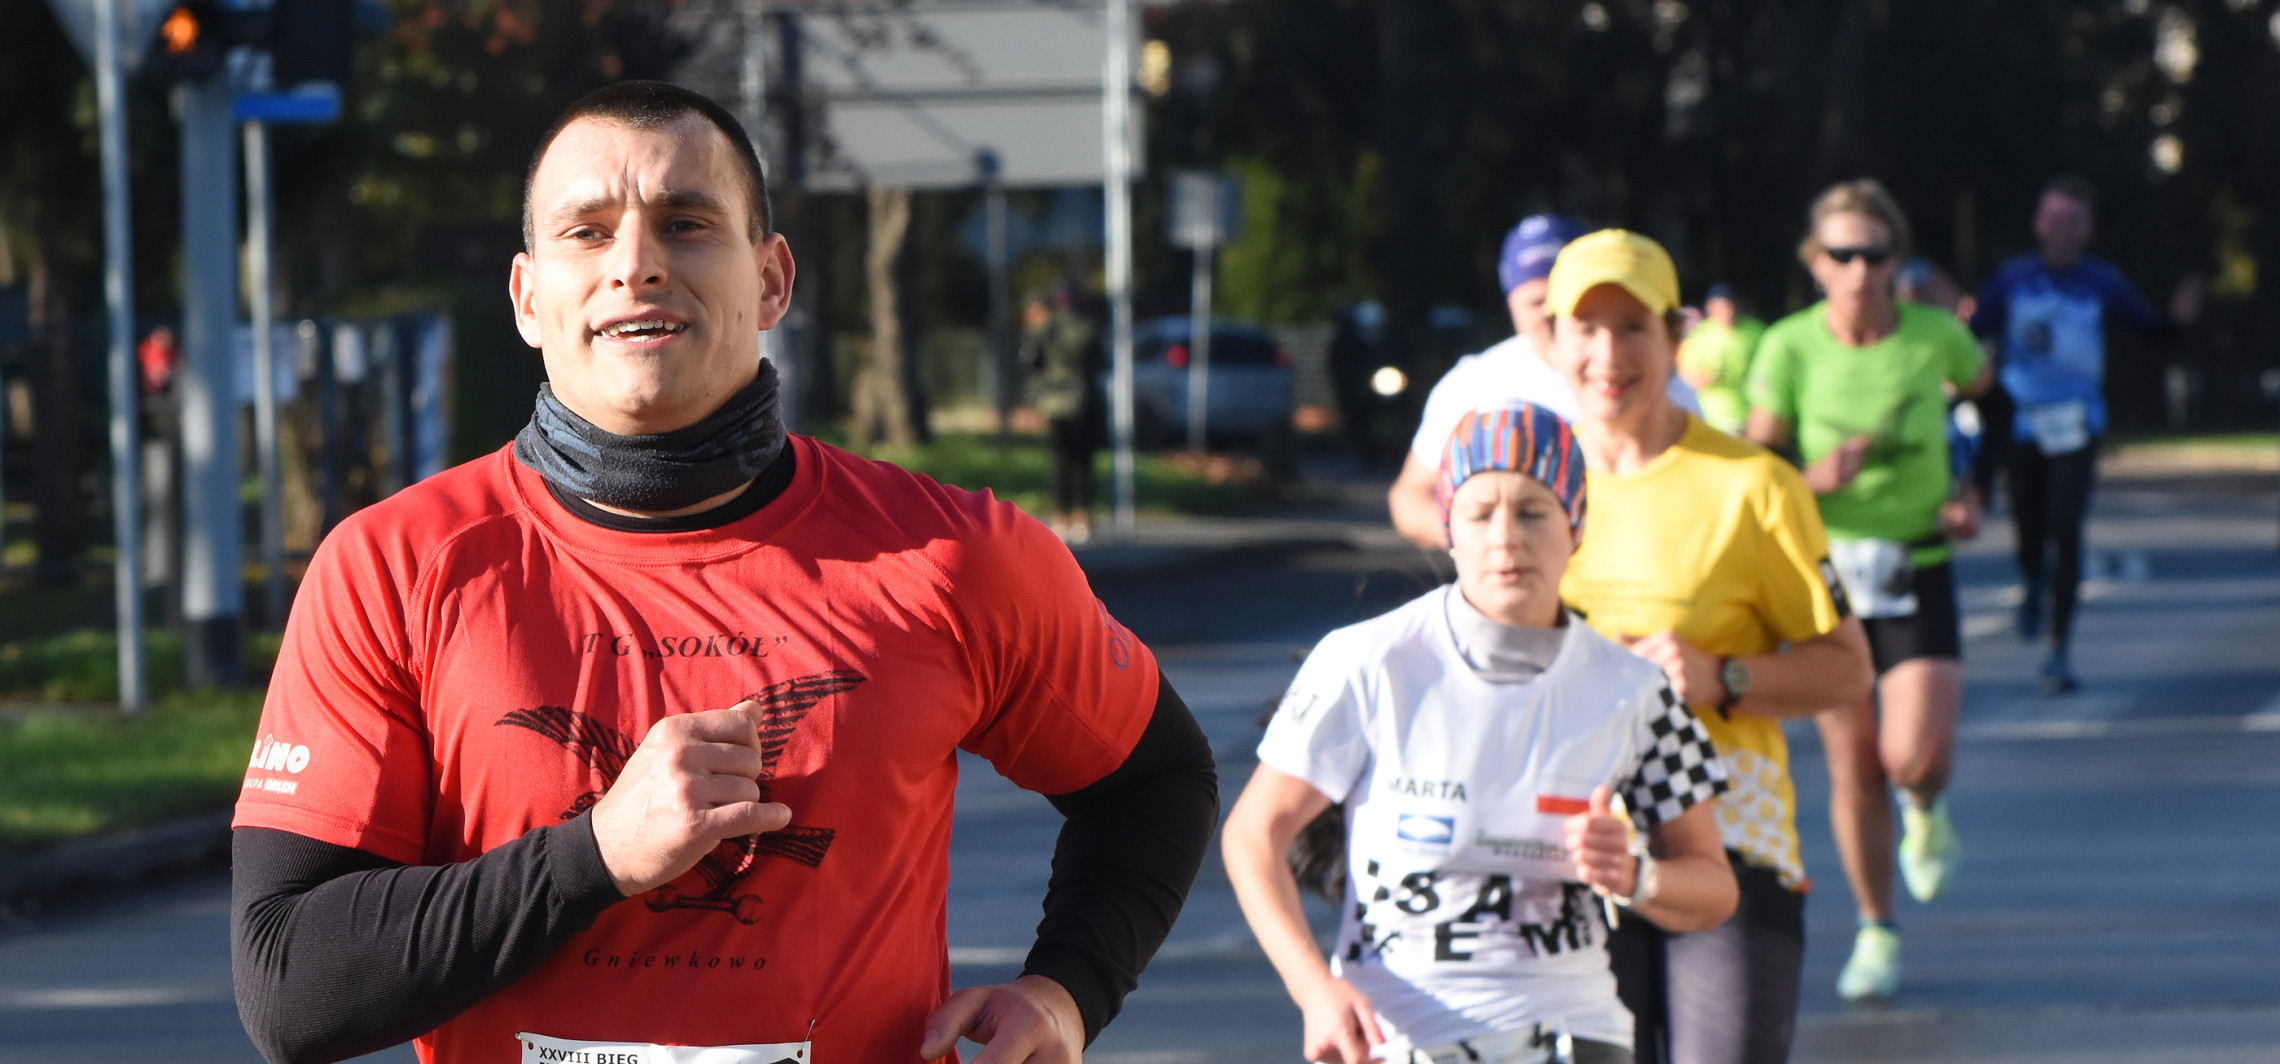 Region - Długodystansowi biegacze finiszowali w Gniewkowie